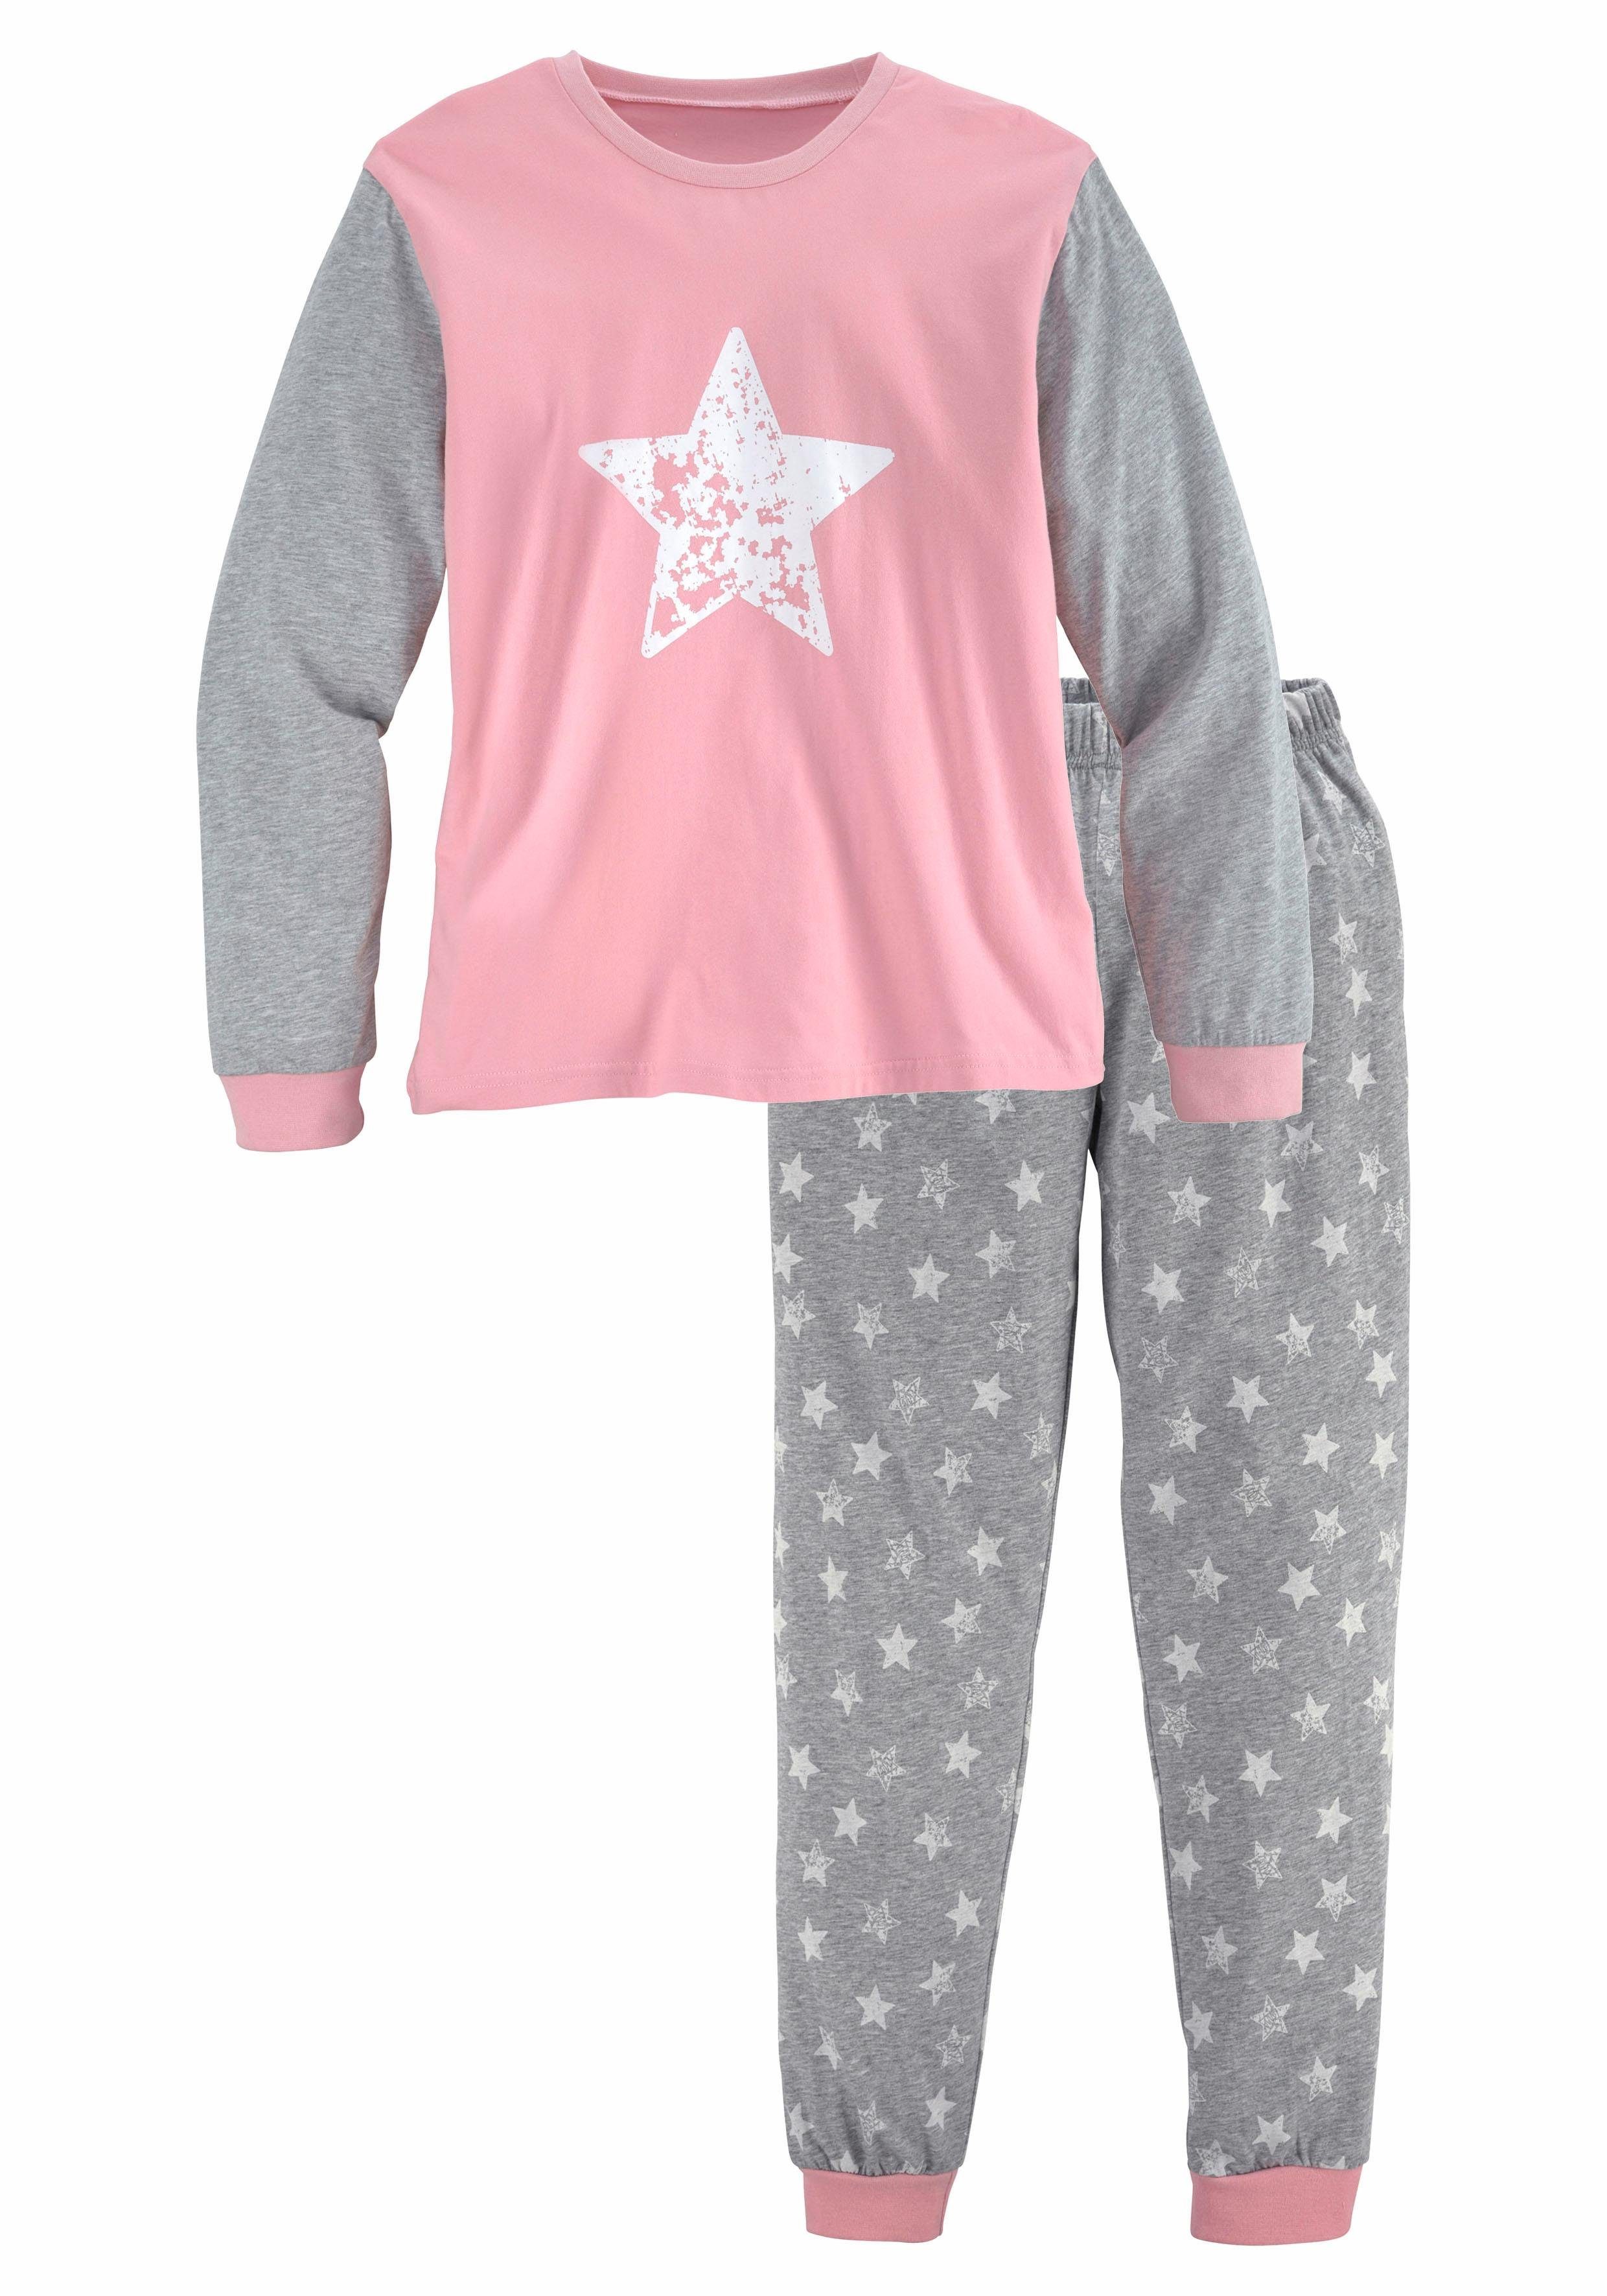 Vivance Pyjama in langer Form mit Sternen Print | OTTO